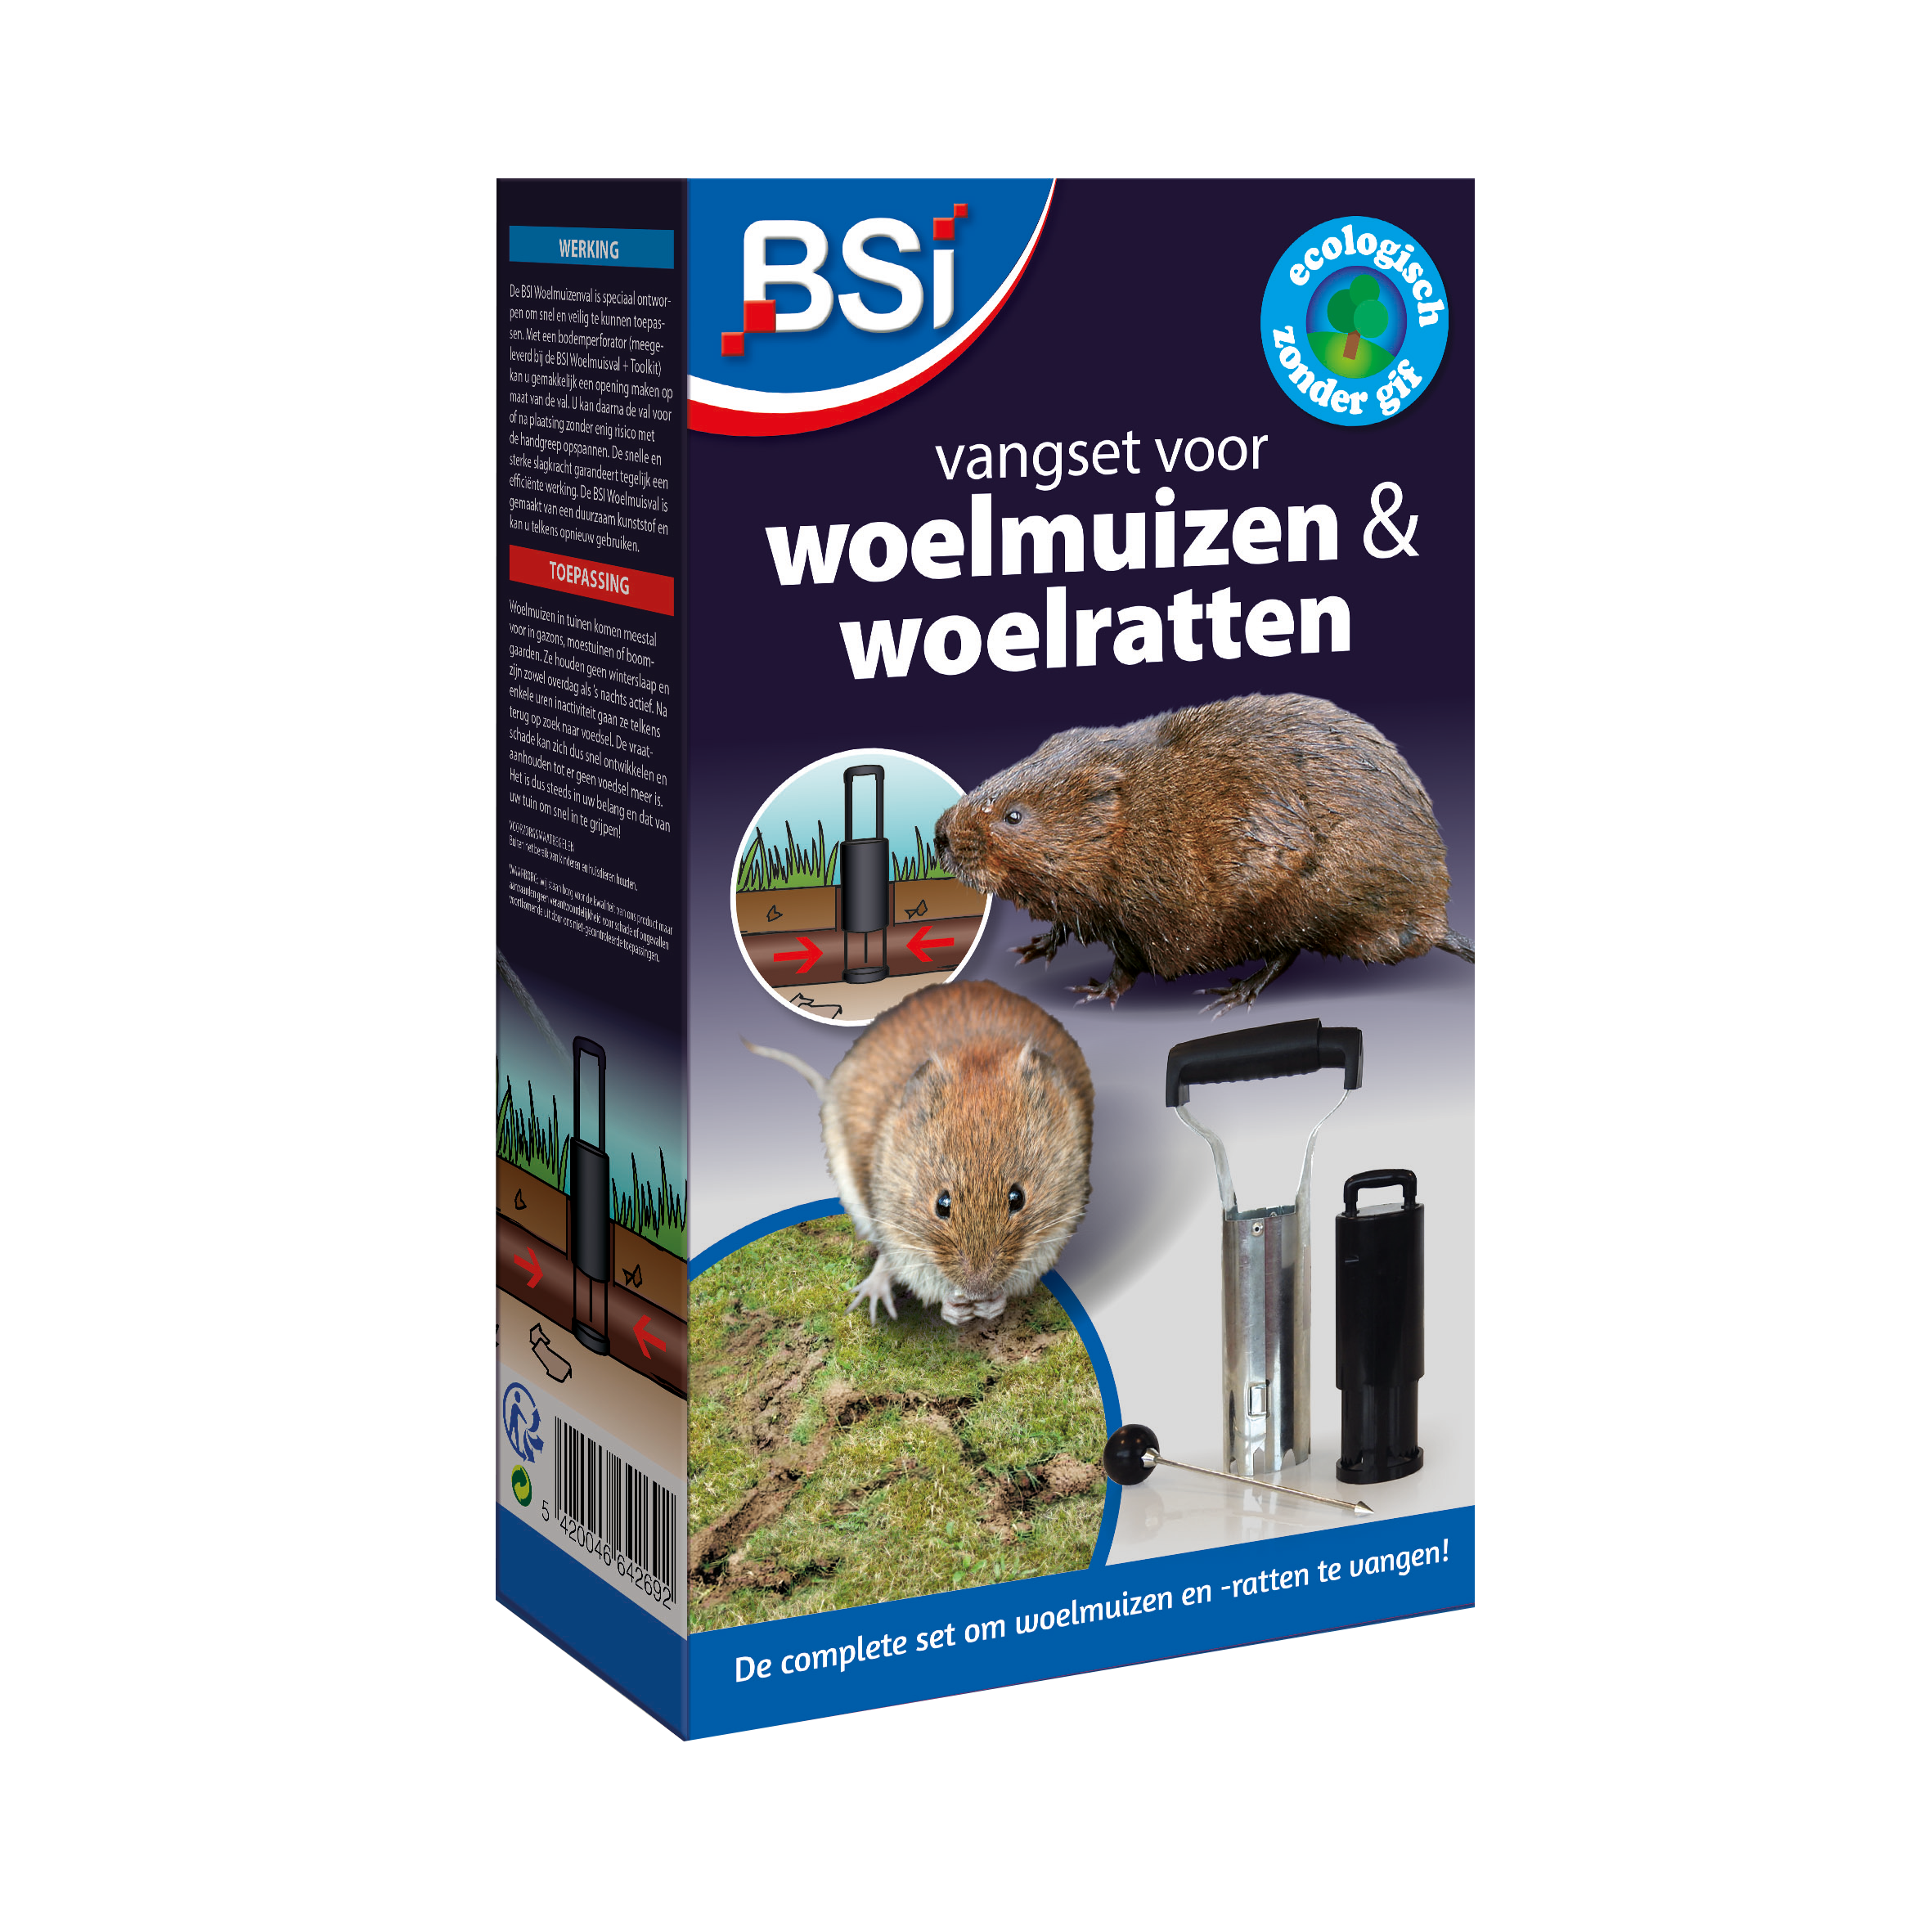 BSI Vangset voor Woelmuizen & Woelratten image